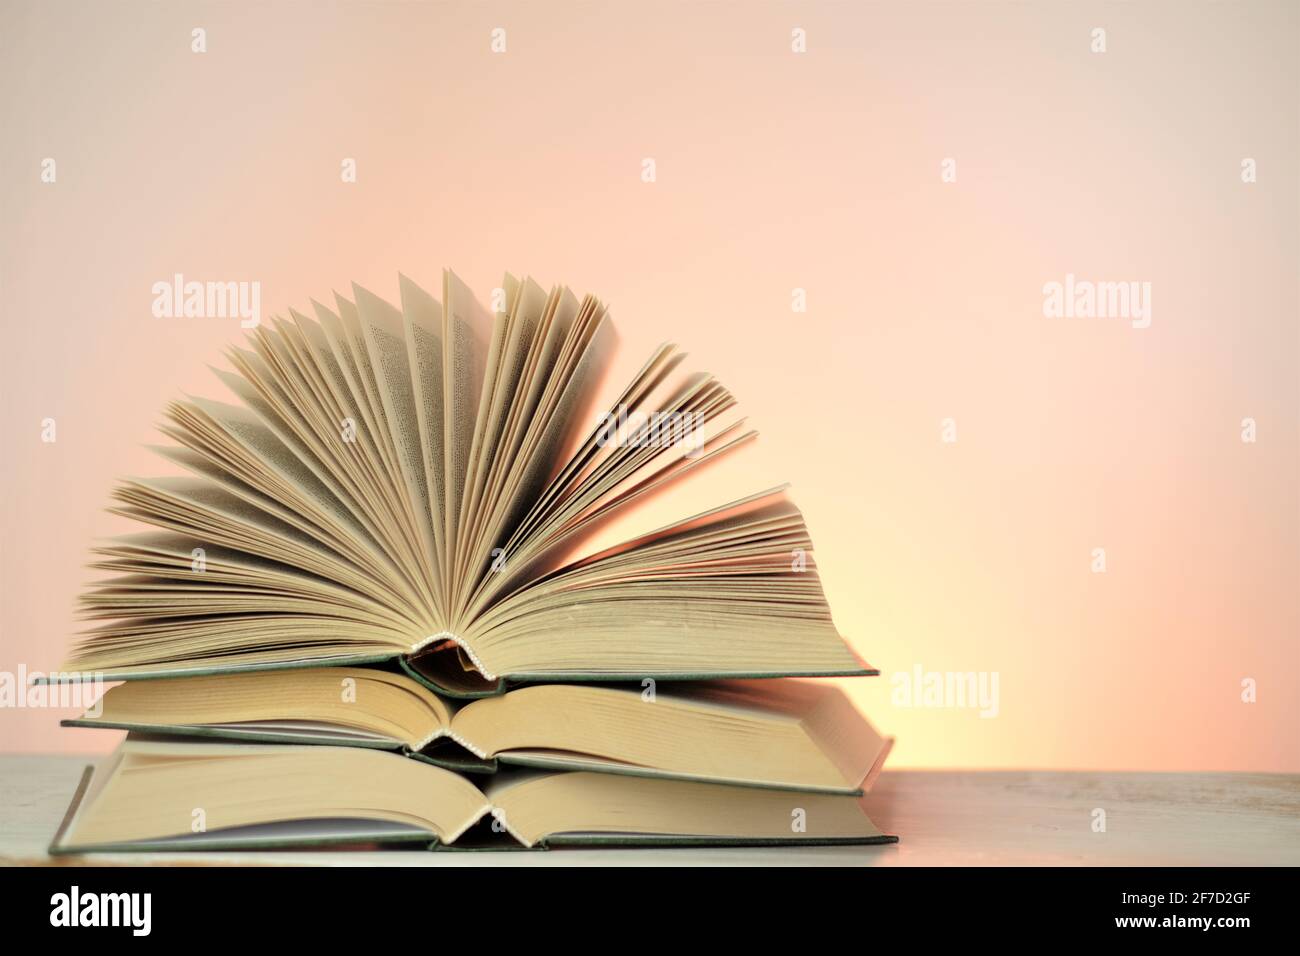 Lettura libri e letteratura.Open libri stack set su uno sfondo rosa chiaro. Studio e concetto di istruzione. Primo piano del libro pages.Learning e conoscenza Foto Stock